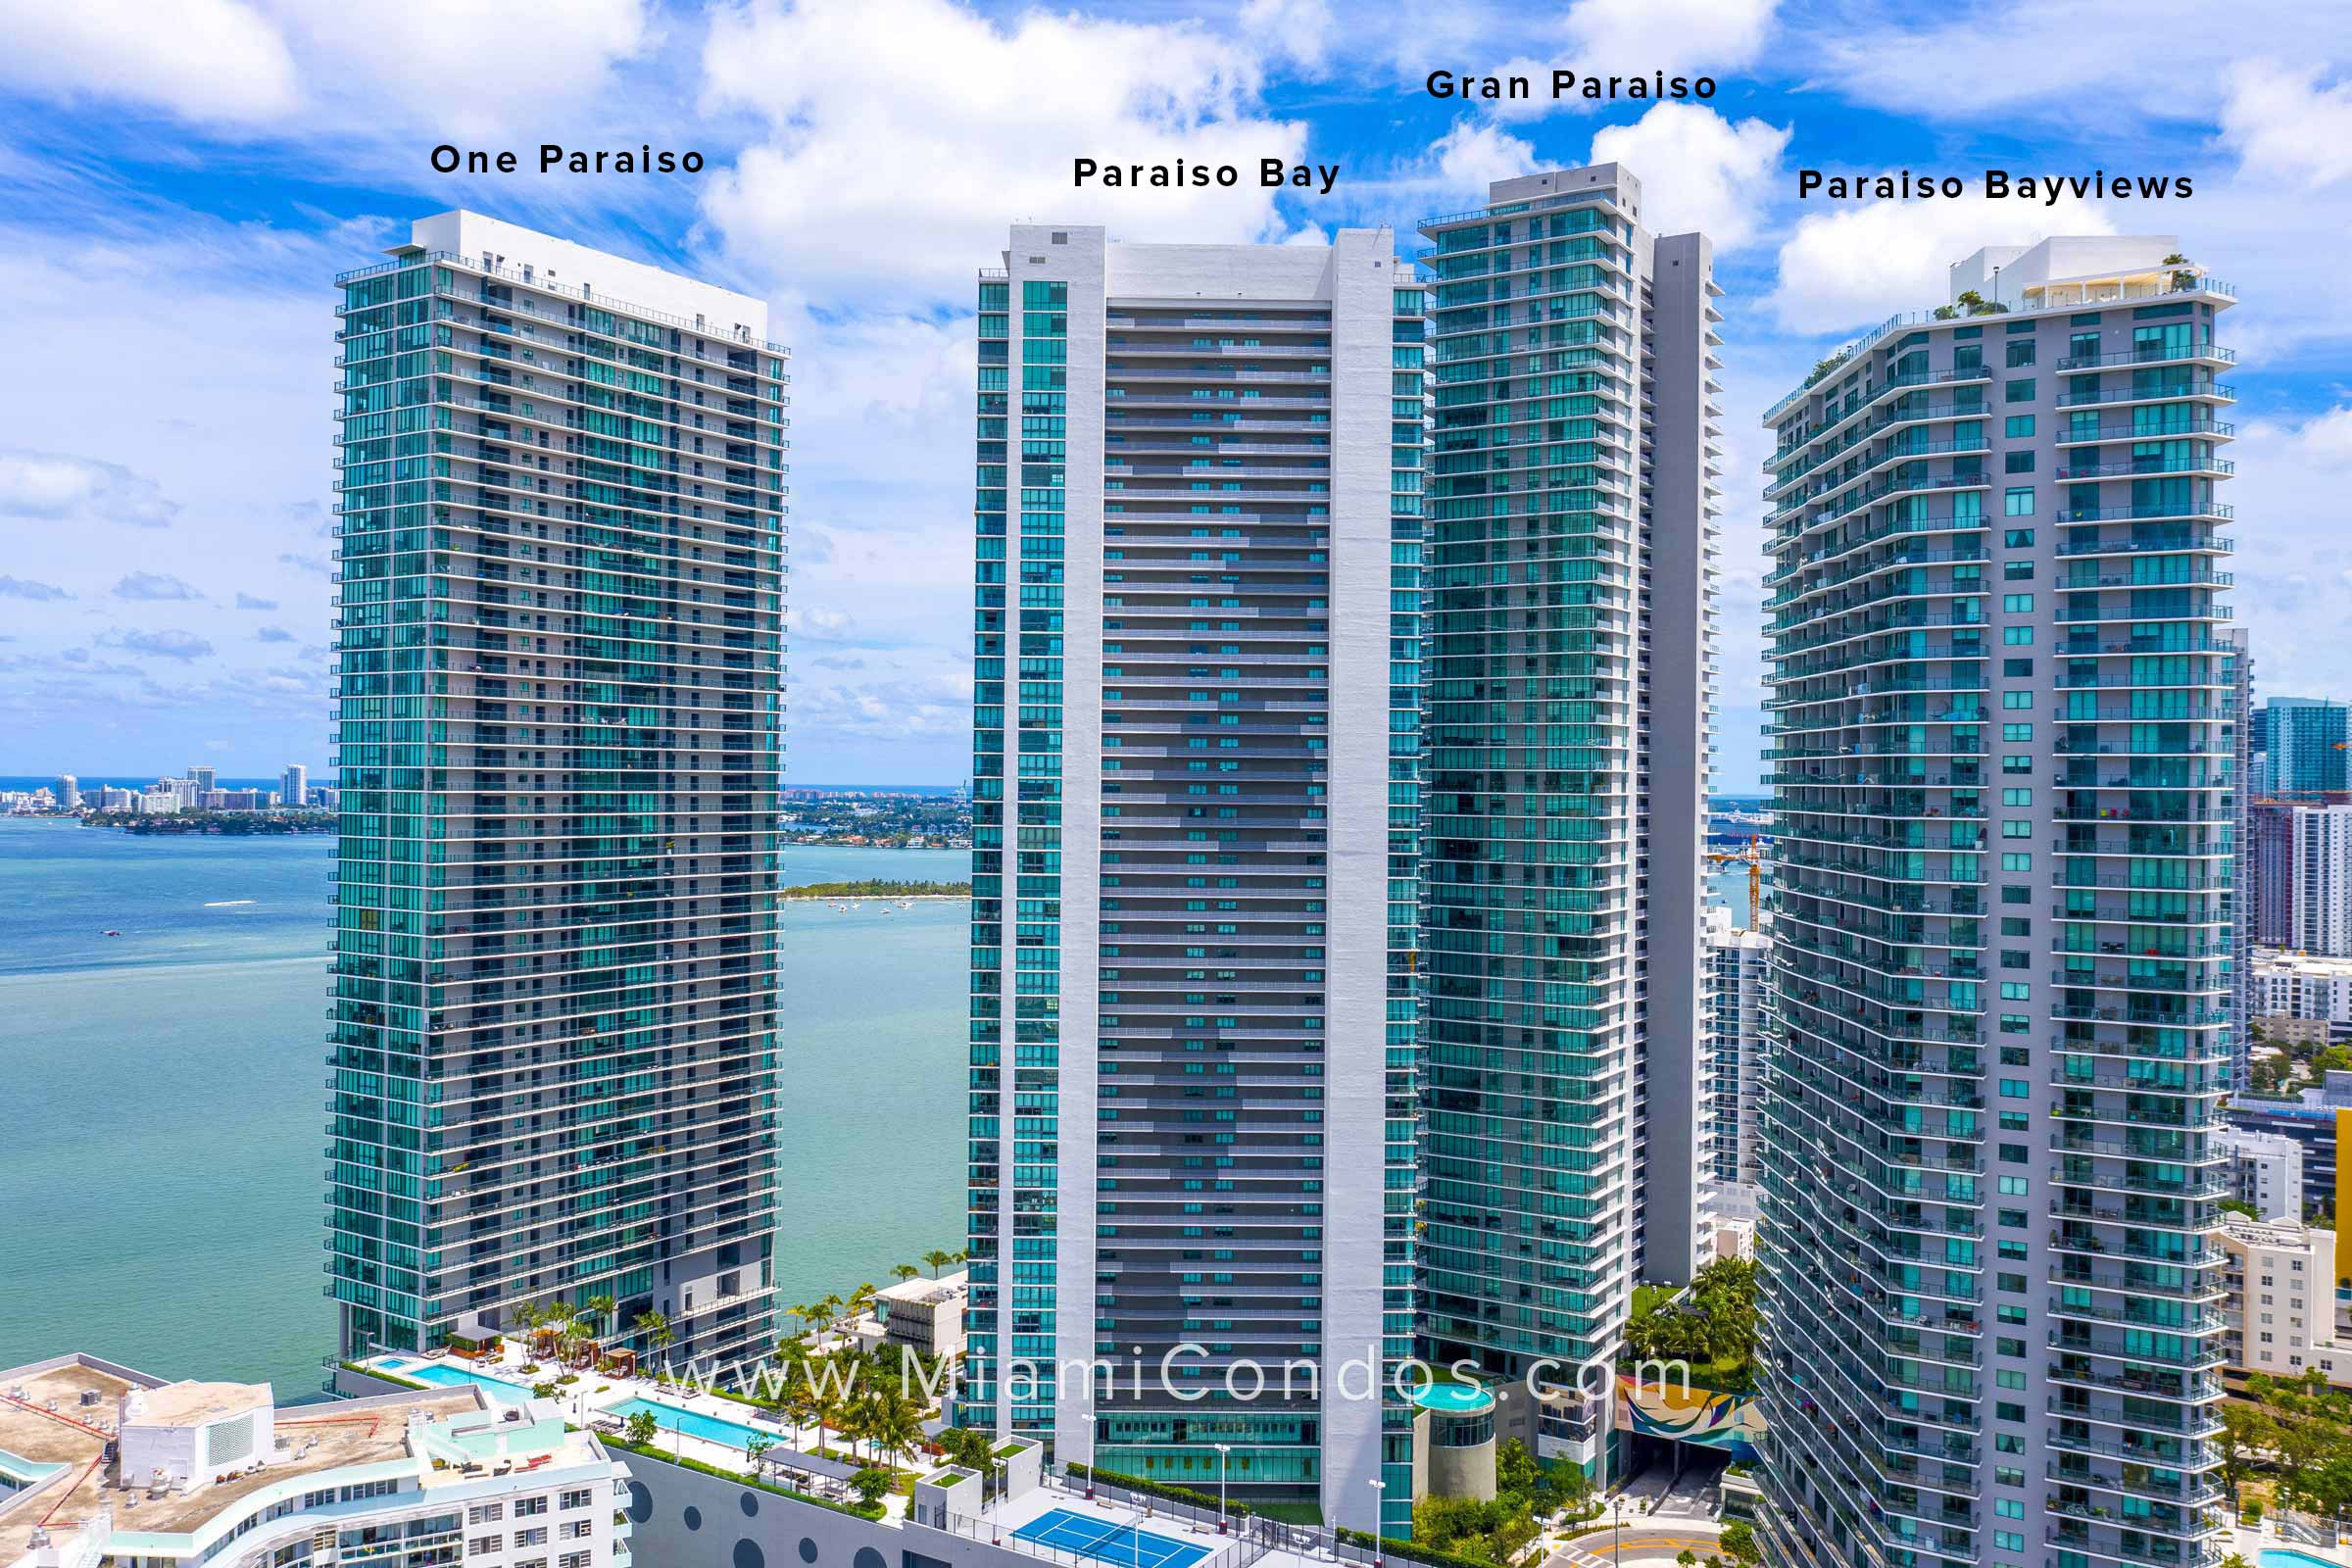 Paraiso Buildings in Miami